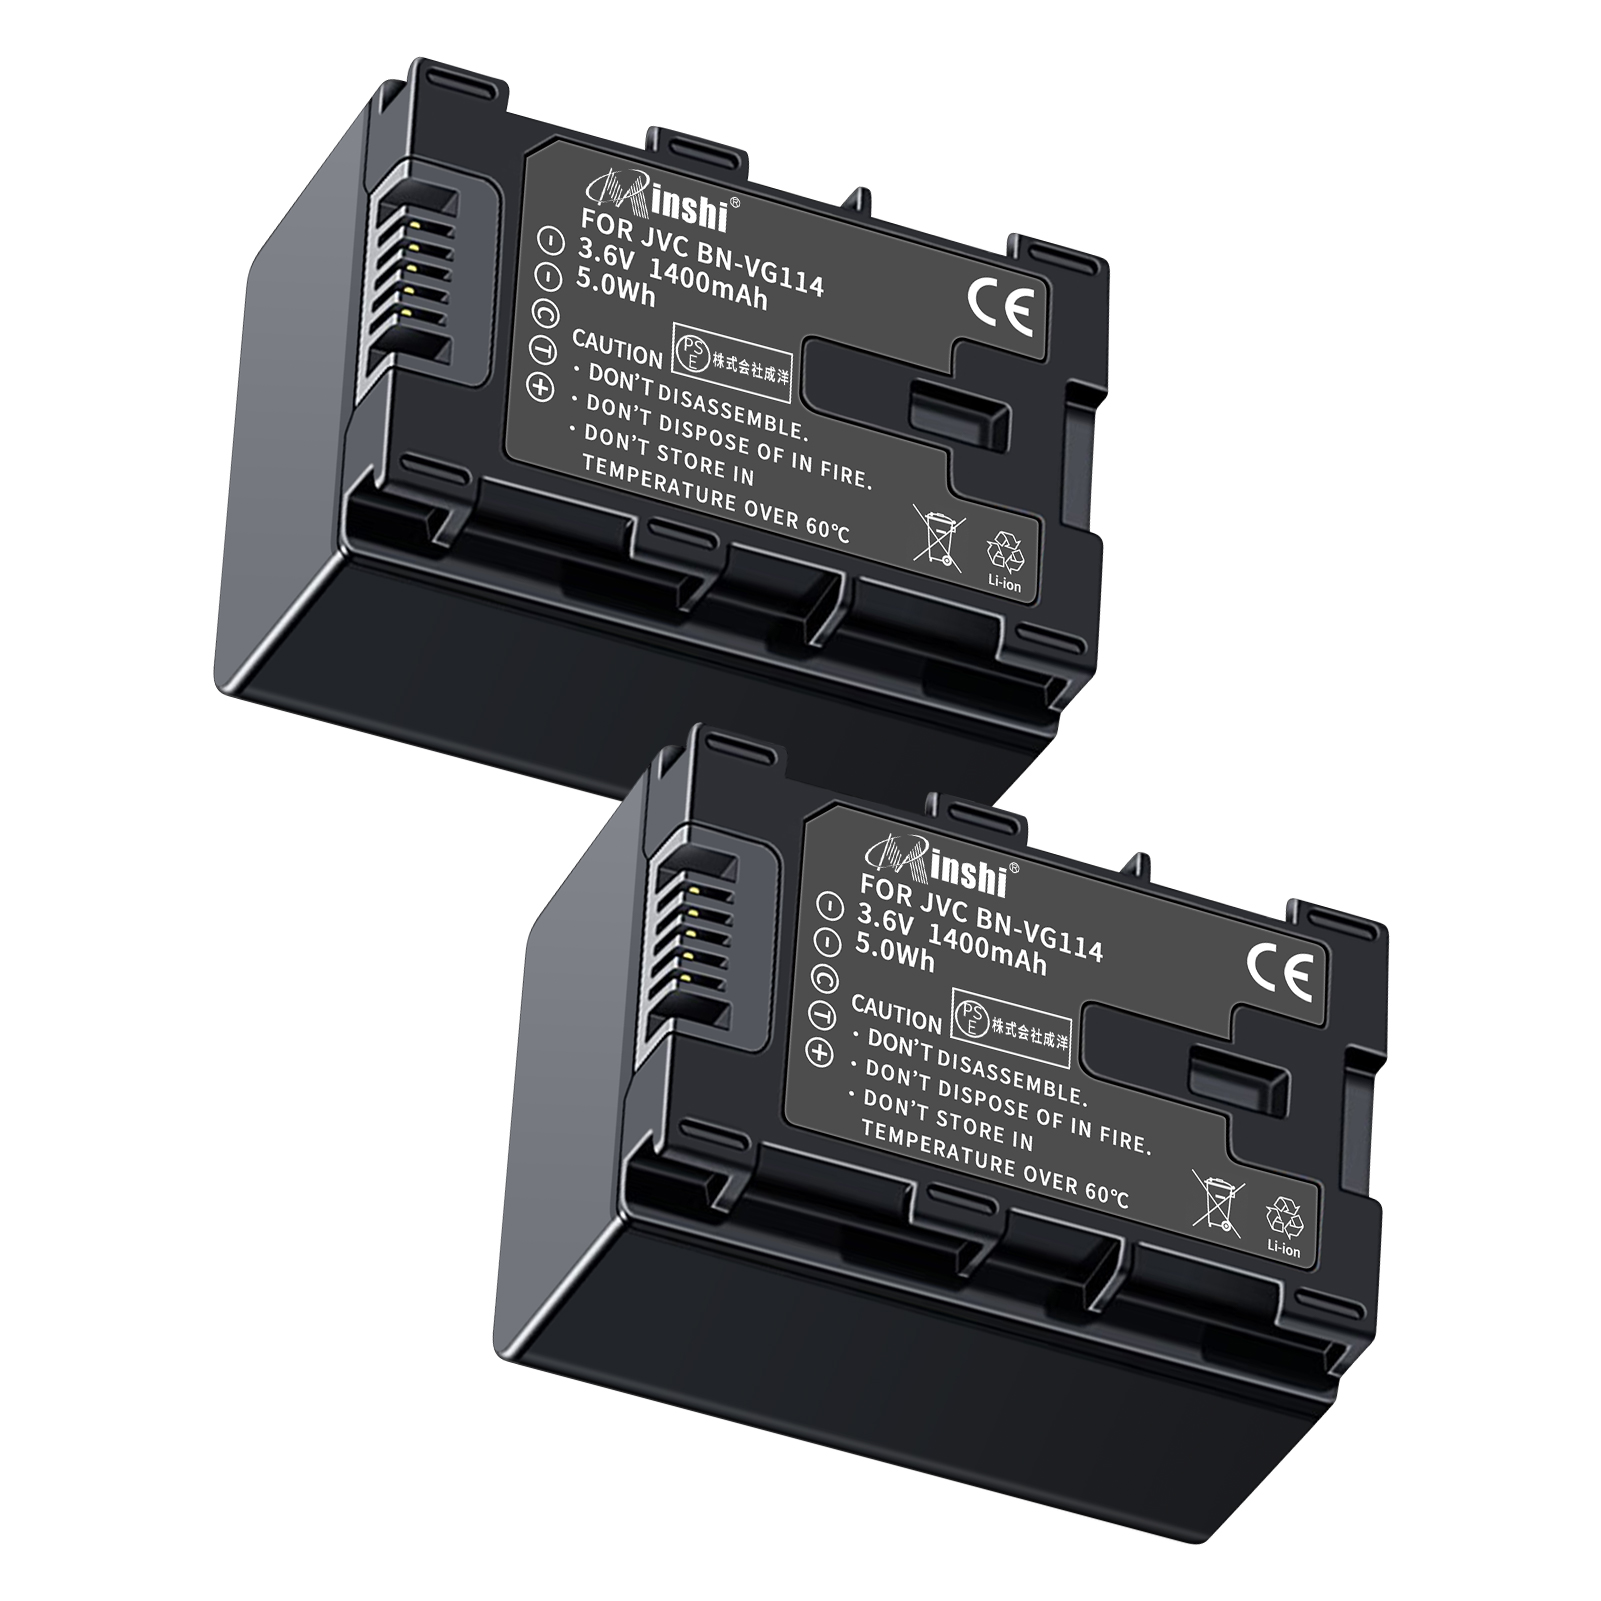 【２個セット】 minshi VICTOR GZ-E565 BN-VG121 対応 互換バッテリー 1400mAh 高品質交換用バッテリー